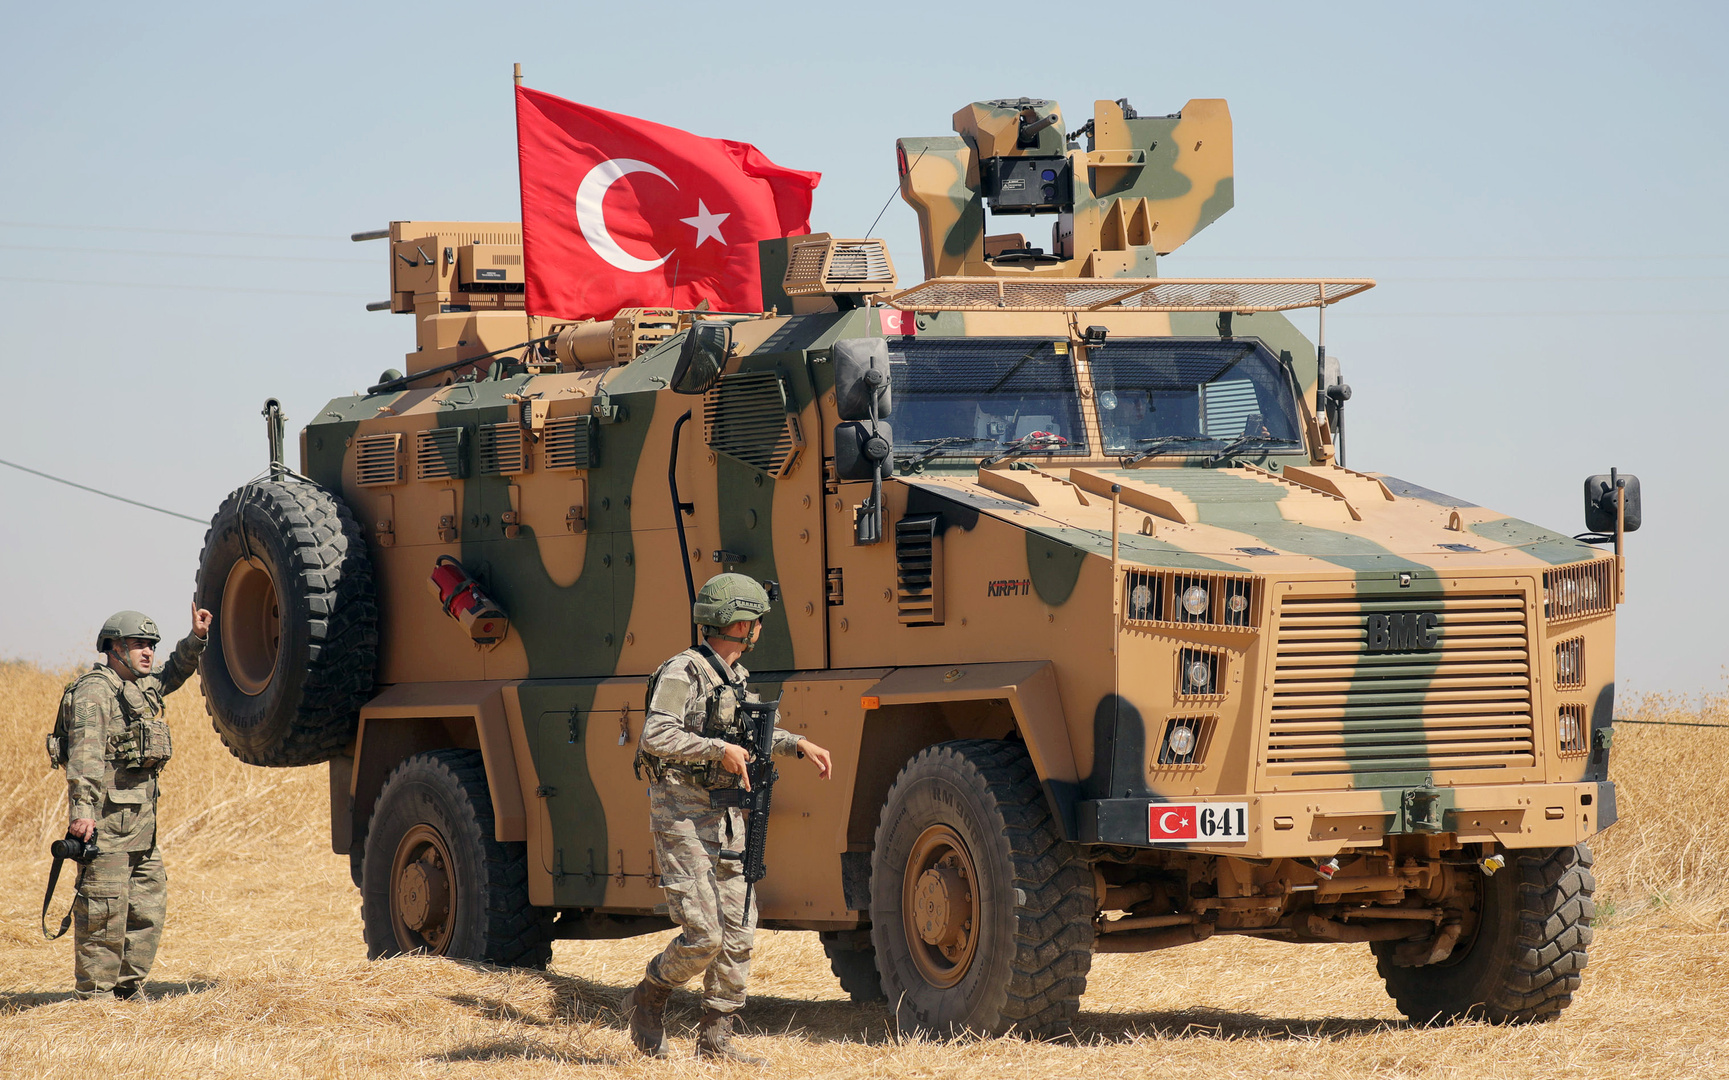 روسيا توجه مقترحا إلى تركيا بشأن أراضي سيطرة قواتها داخل سوريا